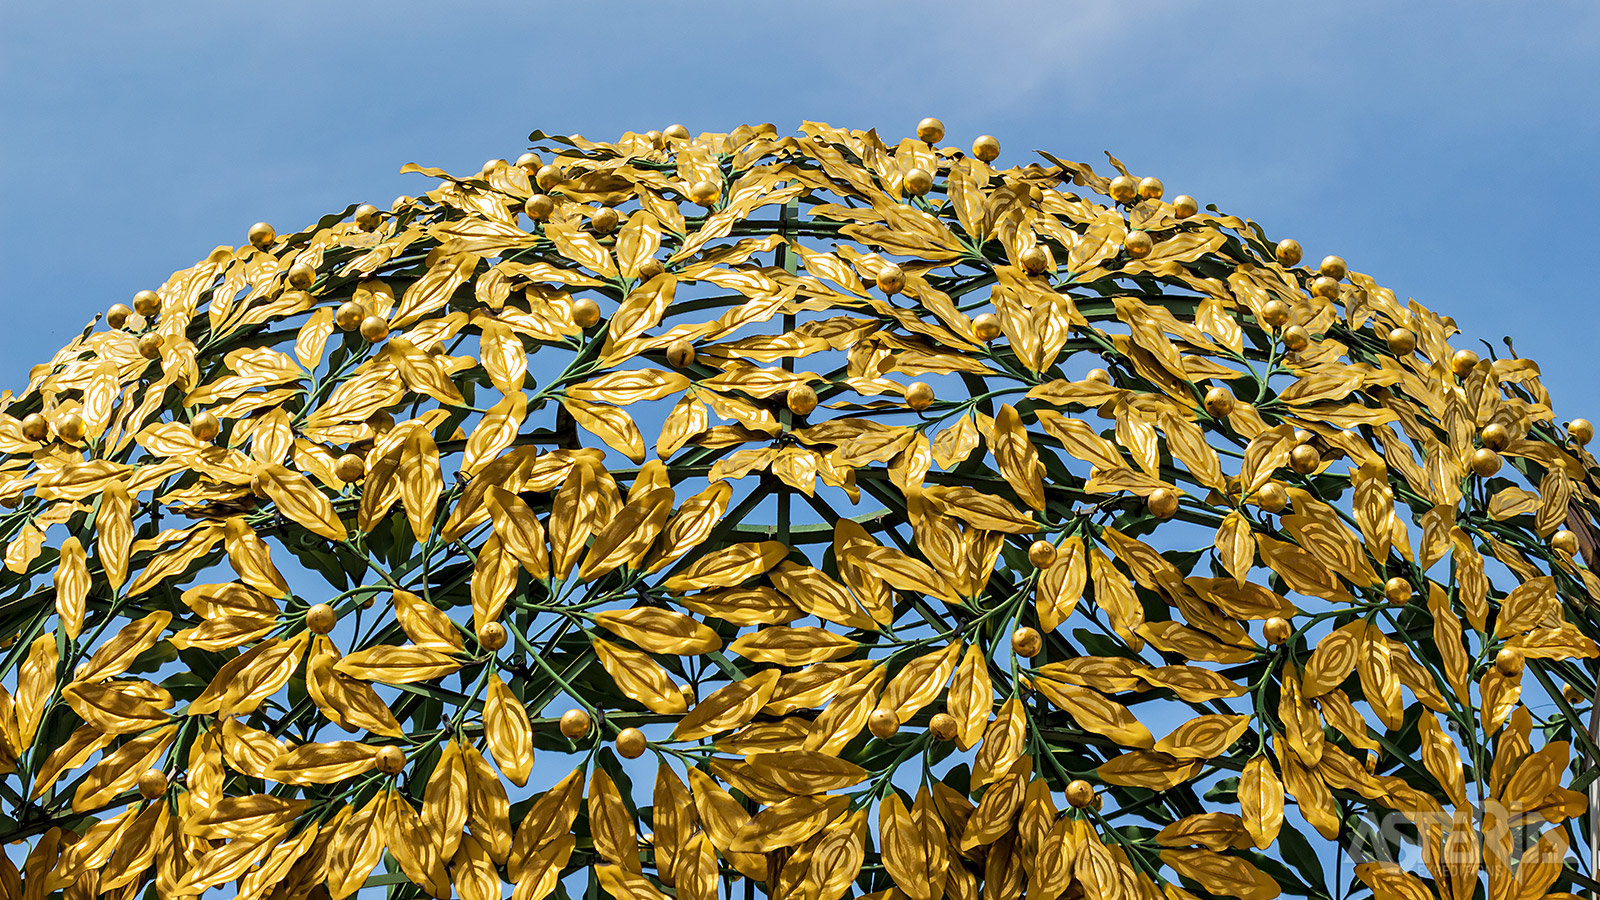 De koepel bestaat uit honderden vergulde laurierbladeren en laurierbessen en kreeg al snel de bijnaam 'de Gouden Kooi'